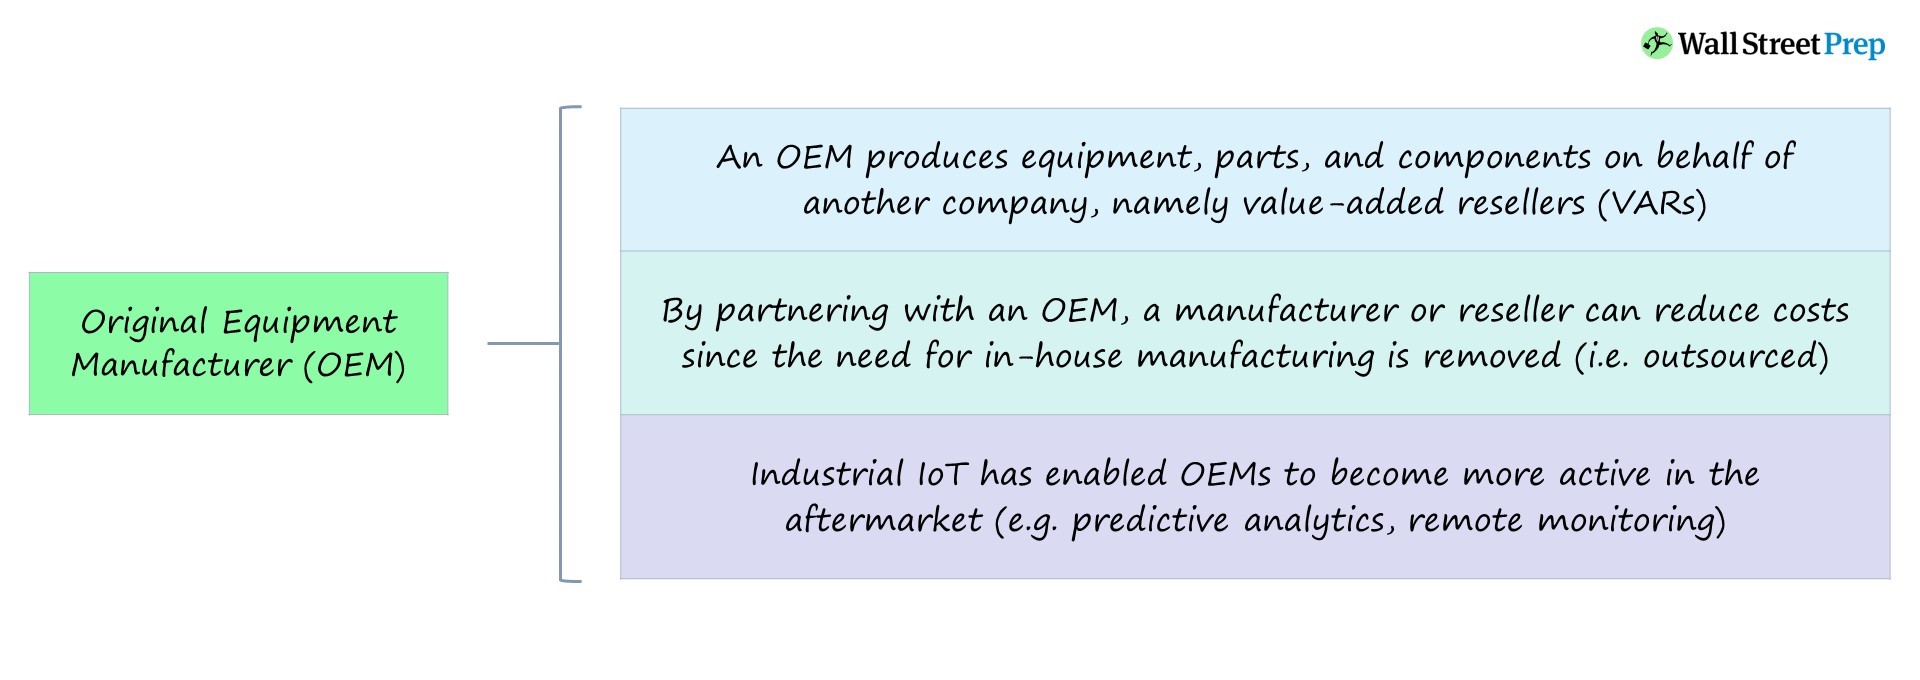 Fabricante de equipos originales (OEM) | Definición + ejemplos